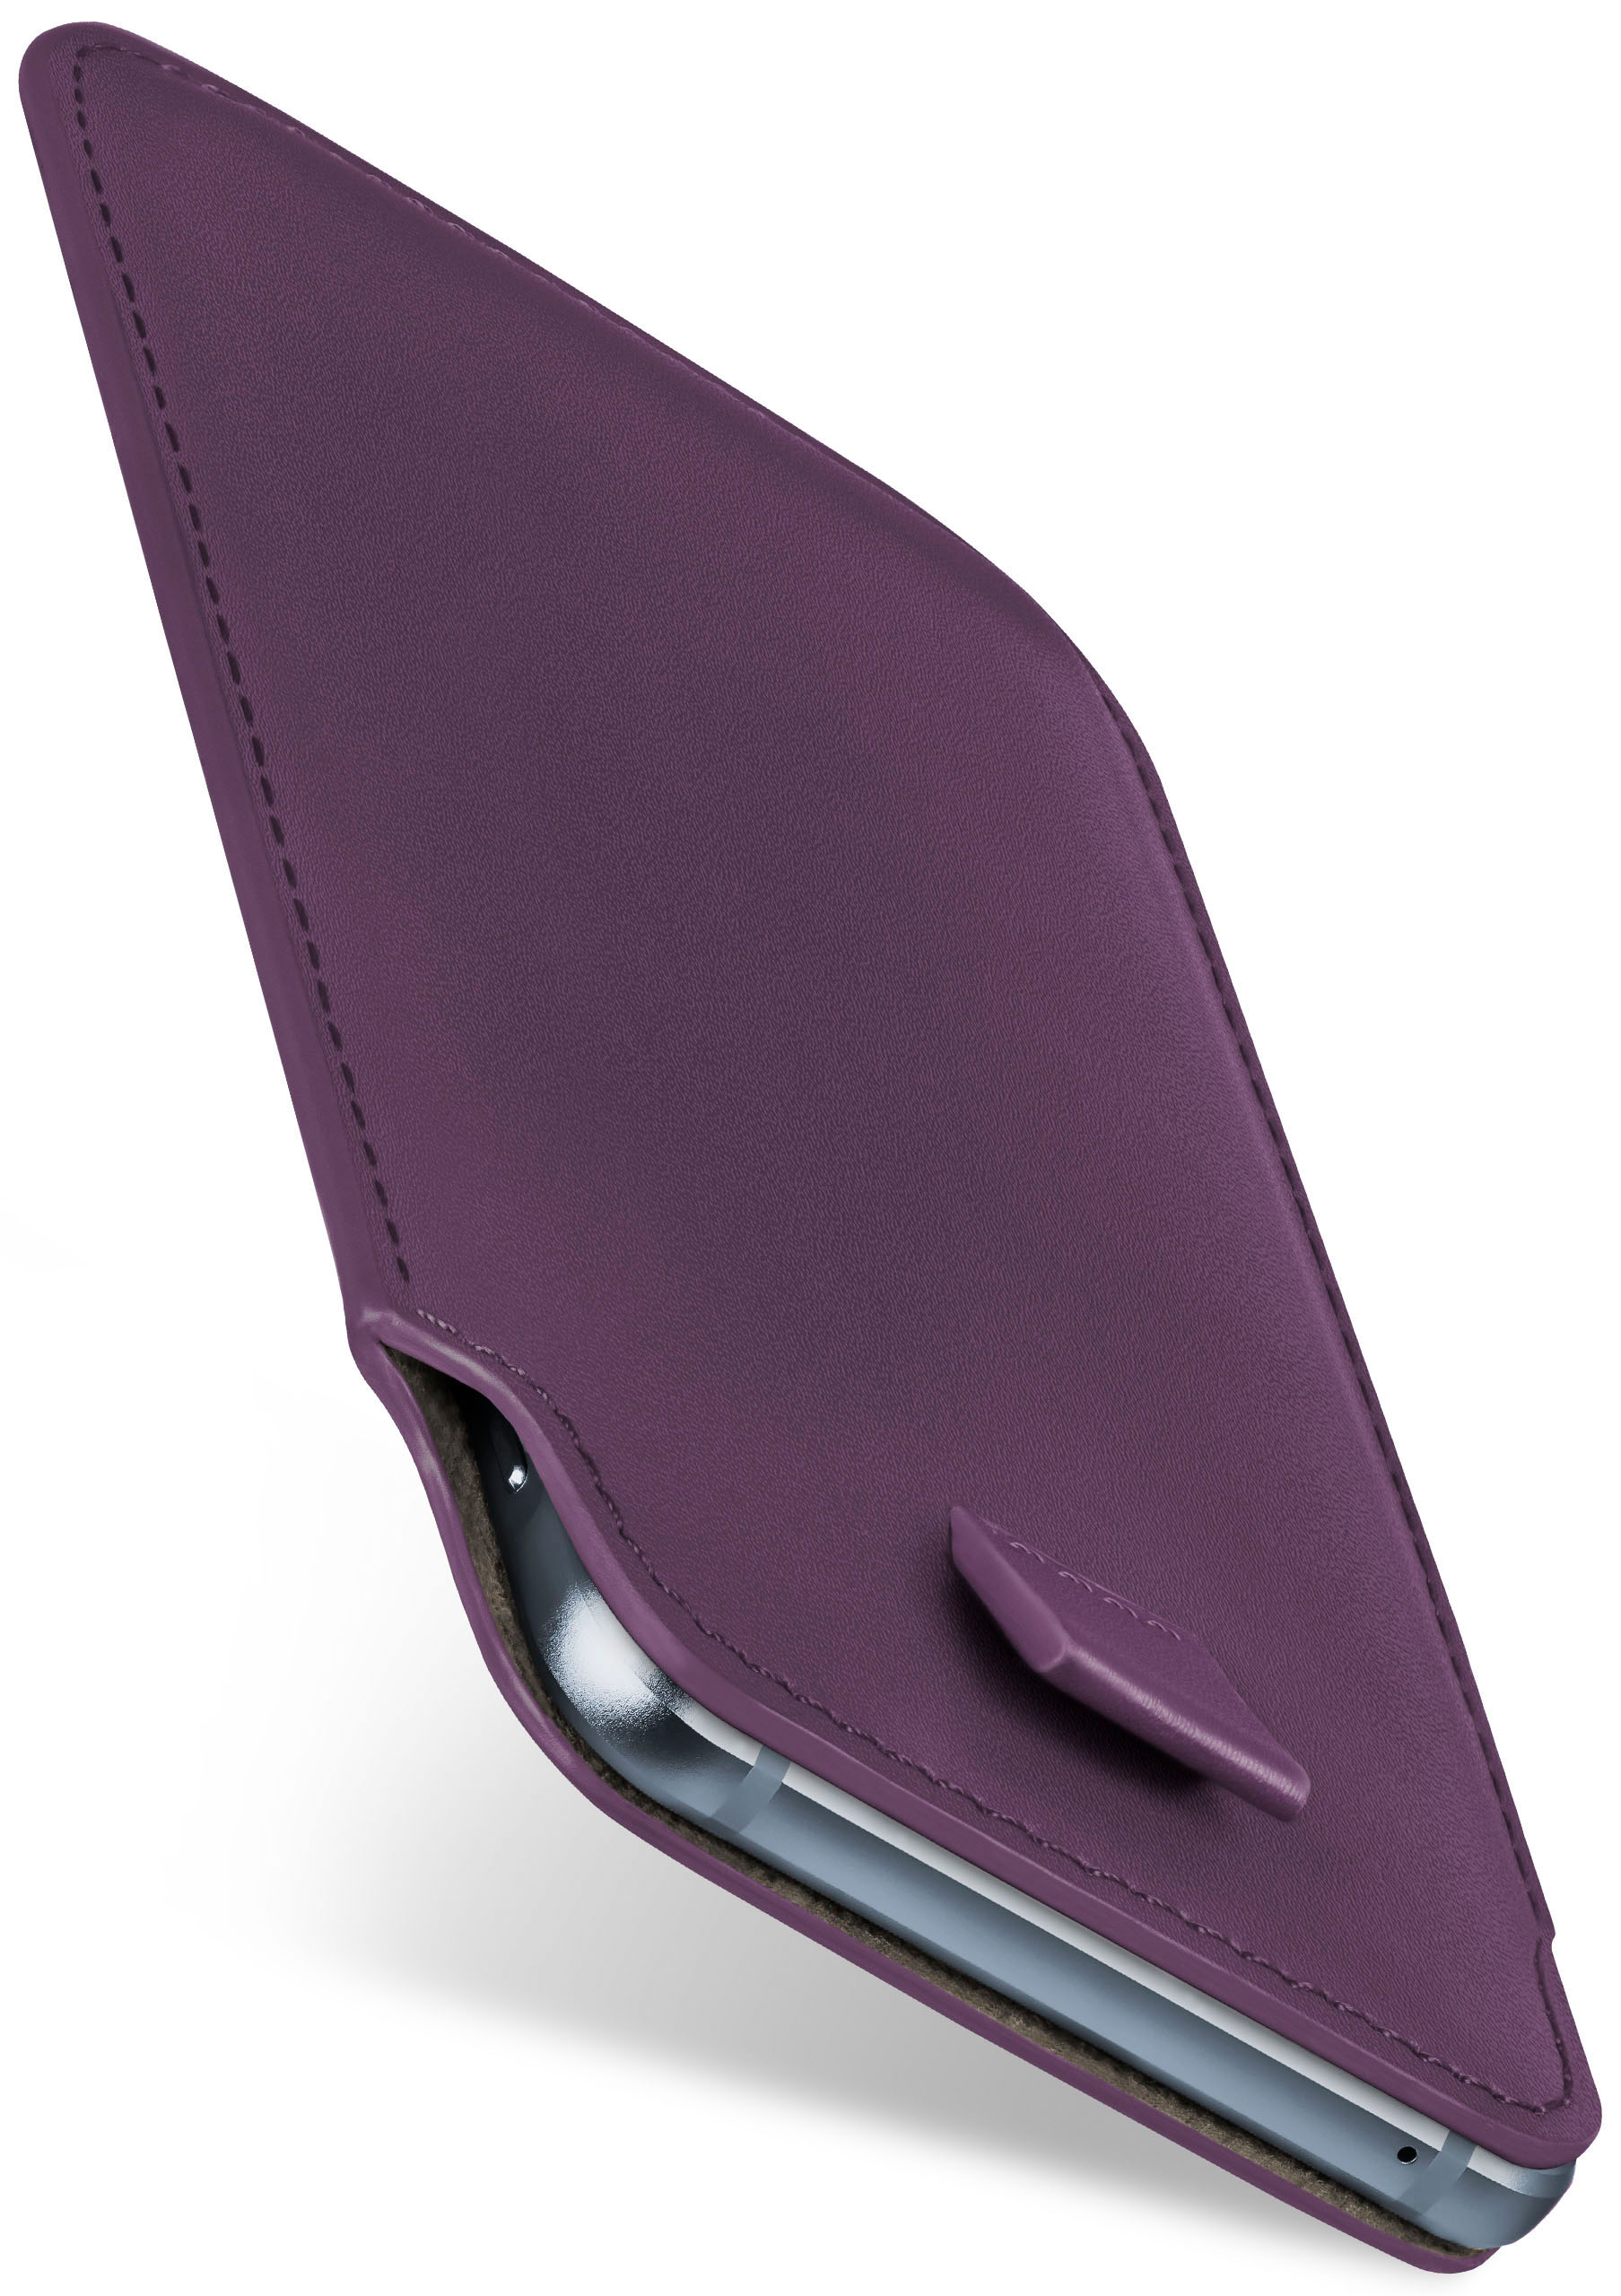 Play, Moto Indigo-Violet MOEX Cover, Z Lenovo, Slide Case, Full